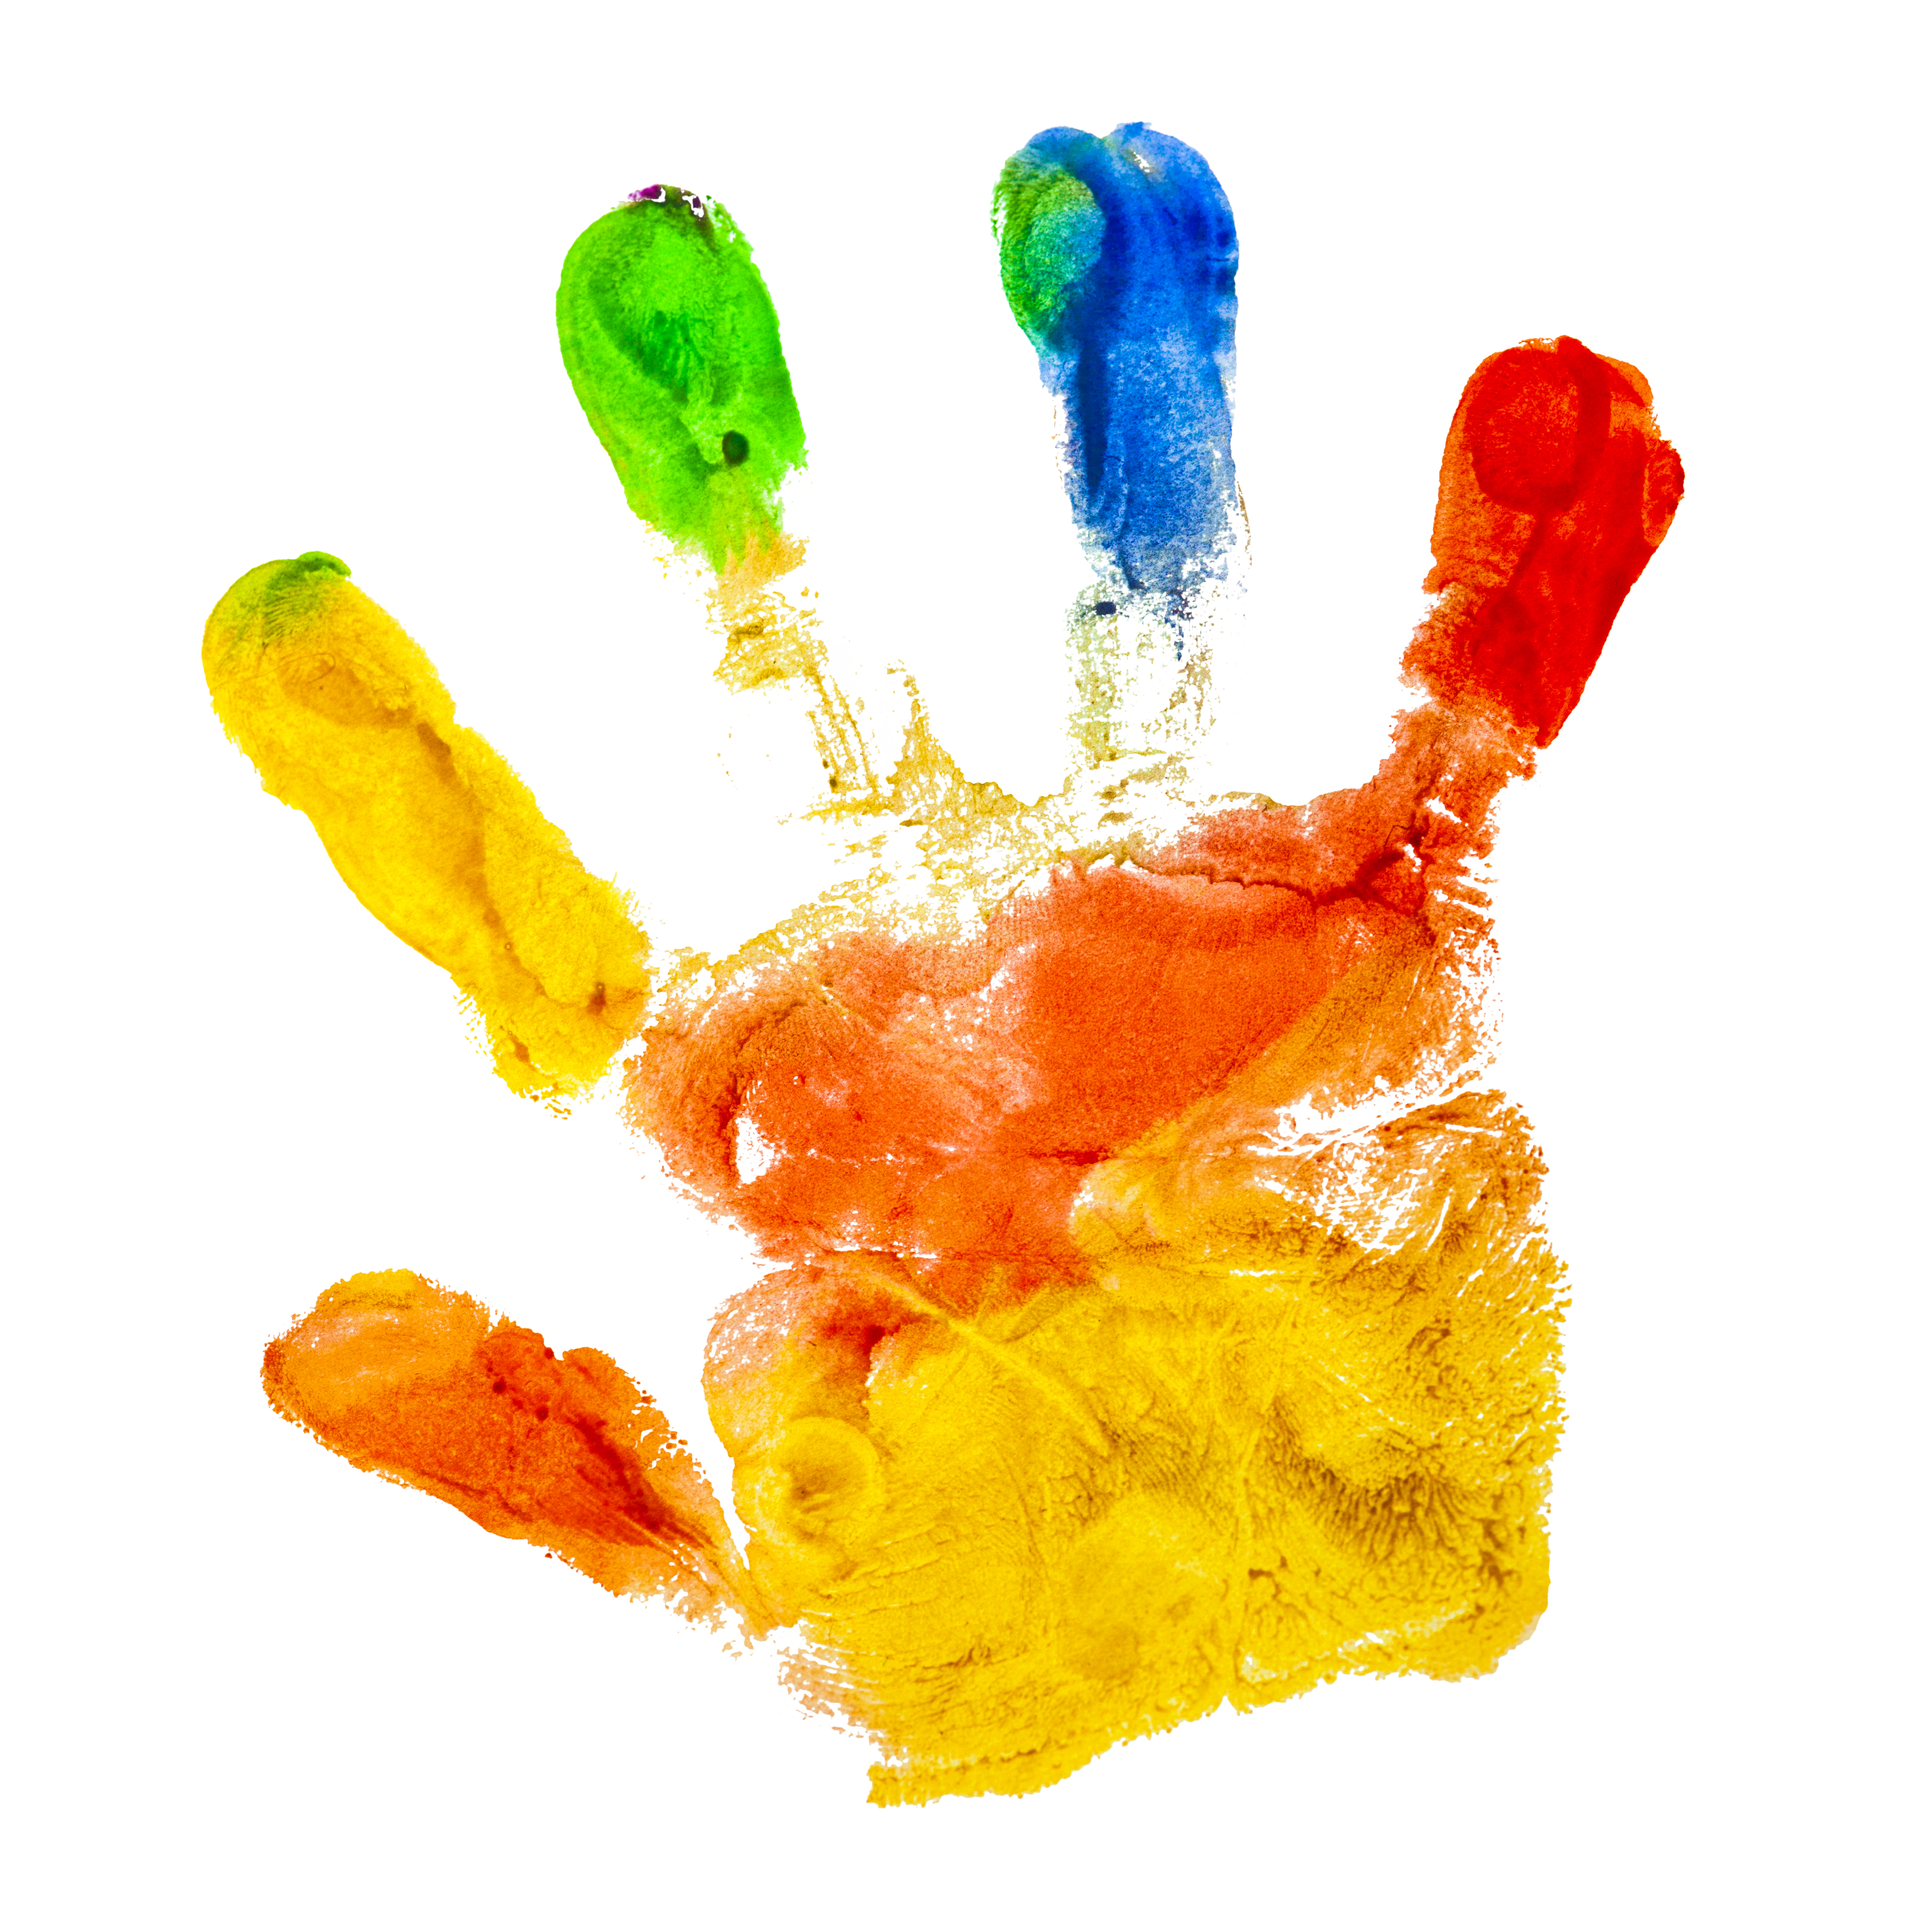 Handprint using mult-color paint